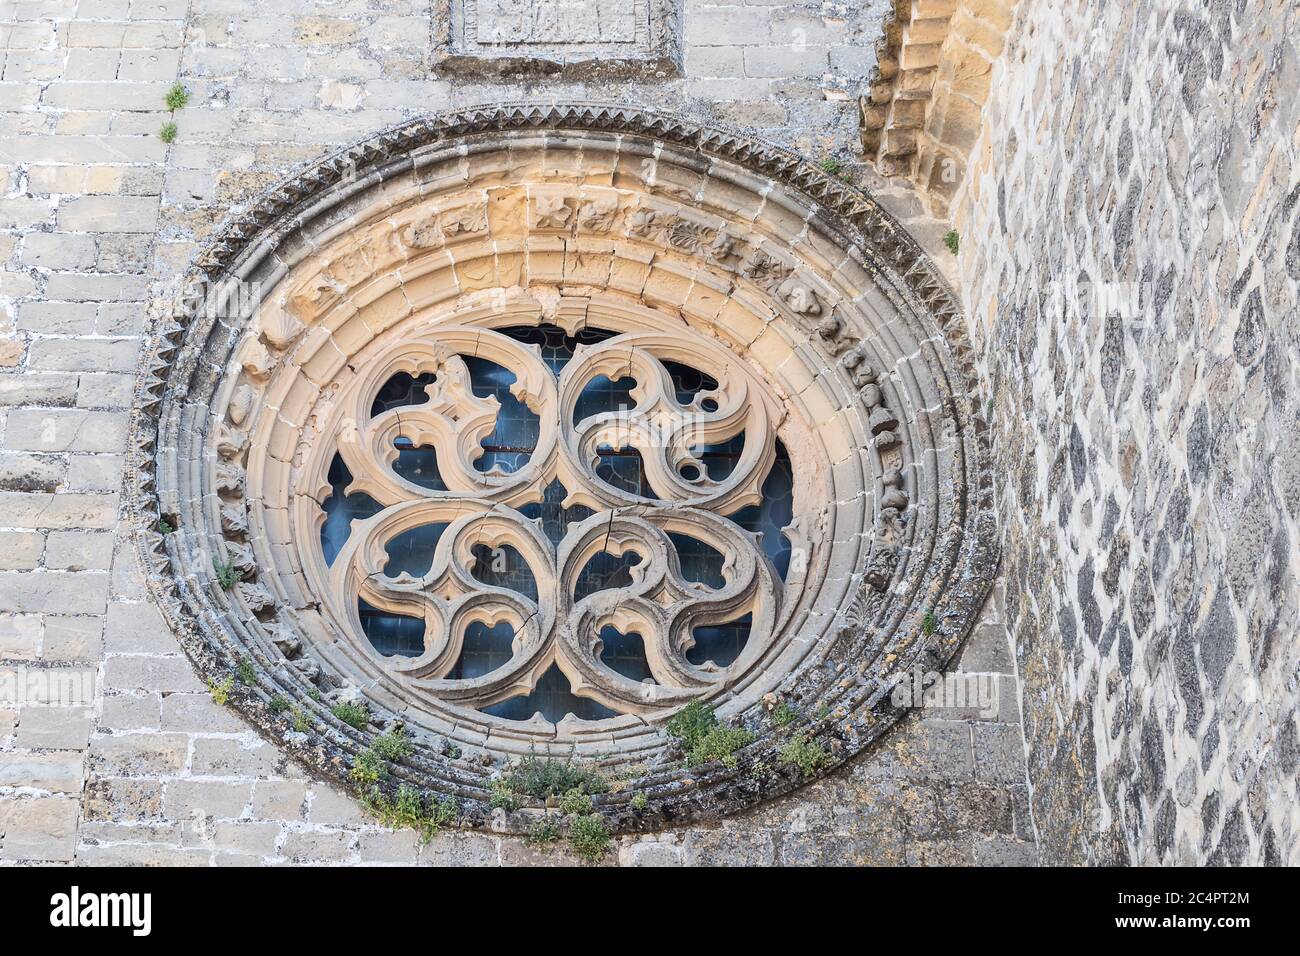 Vitraux de la cathédrale de l'Assomption de la Vierge à Baeza, place Saint Mary, Jaen, Espagne Banque D'Images